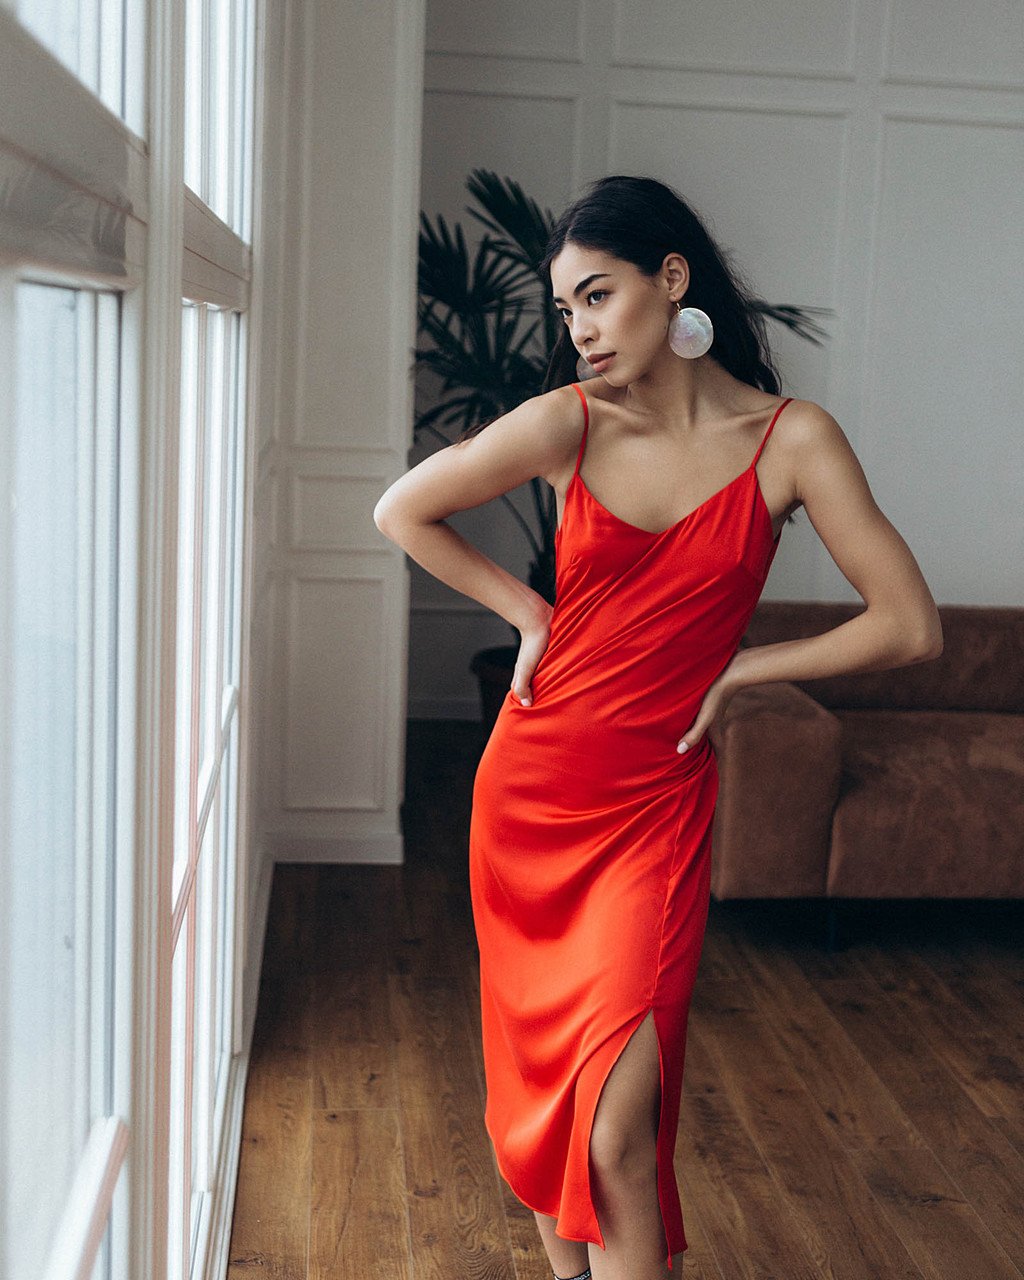 Шелковое платье женское длинное красное в бельевом стиле от бренда Тур, размеры: S, M, L TURWEAR